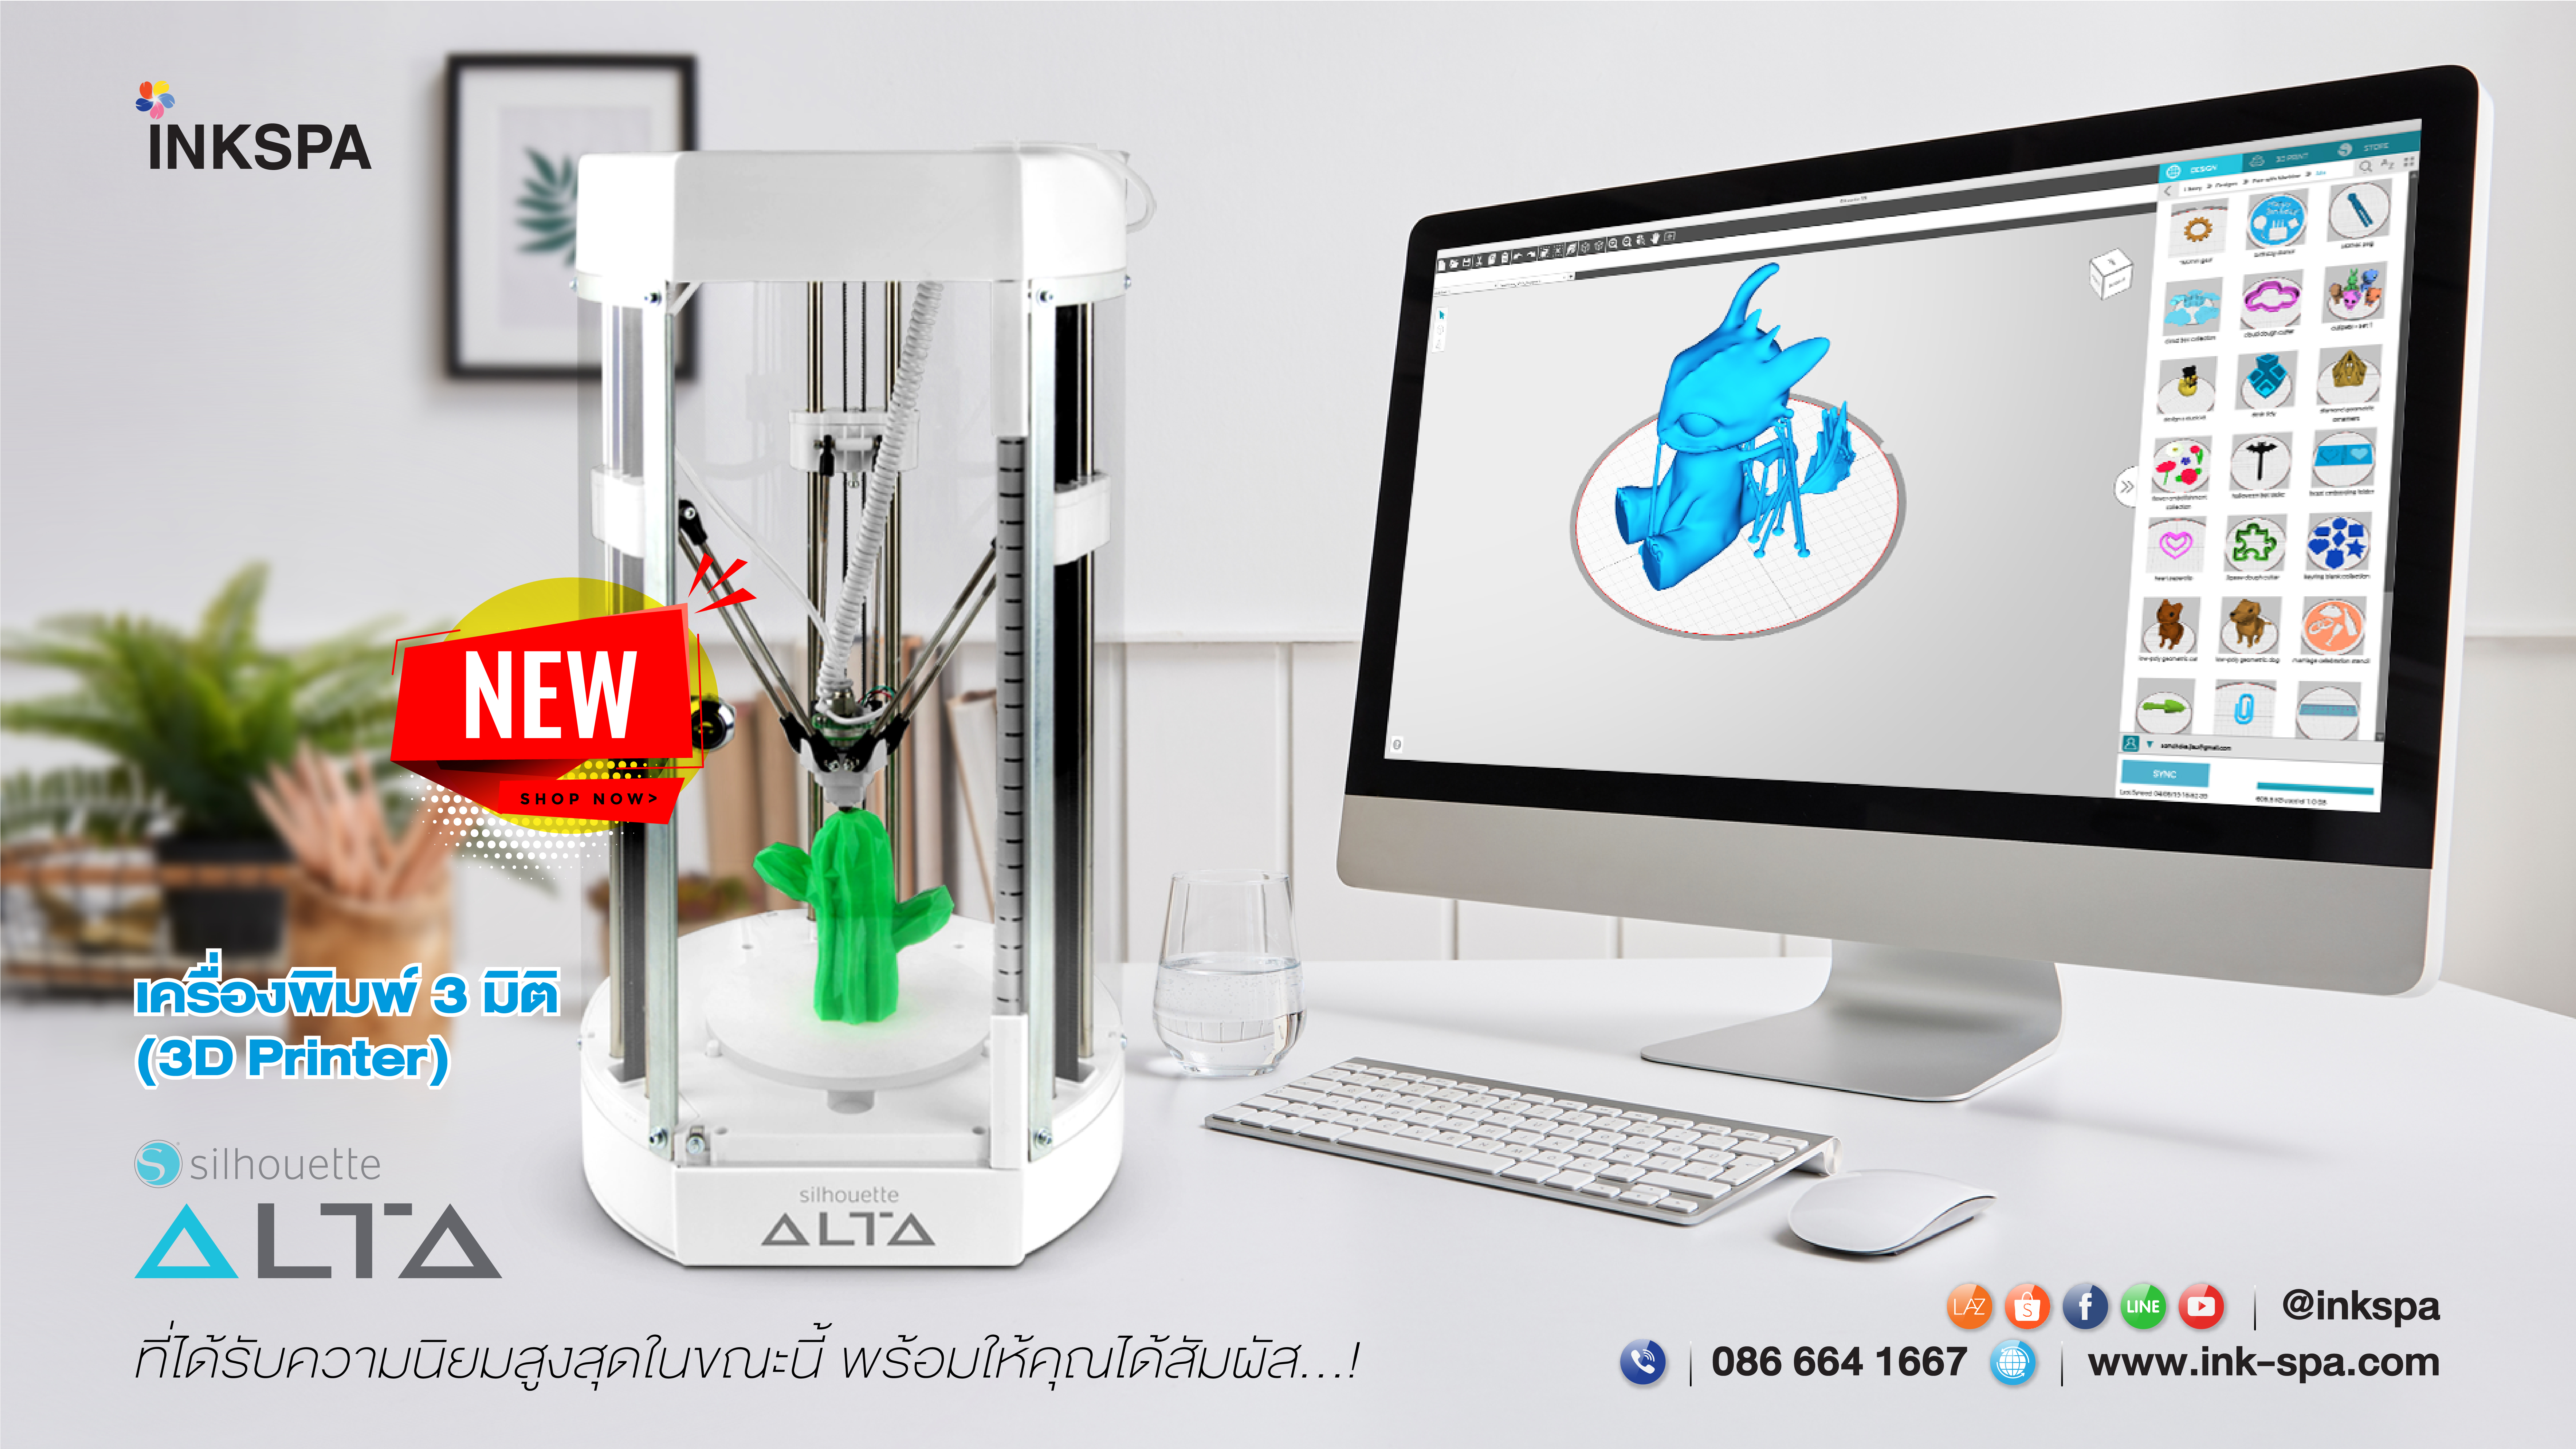 เครื่องพิมพ์ 3 มิติ เครื่องพิมพ์ 3D งานDIY 3D Printer เครื่องพิมพ์ ALTAเส้นใยพลาสติก PLA เครื่องพิมพ์ 3D ALTA FILAMENT